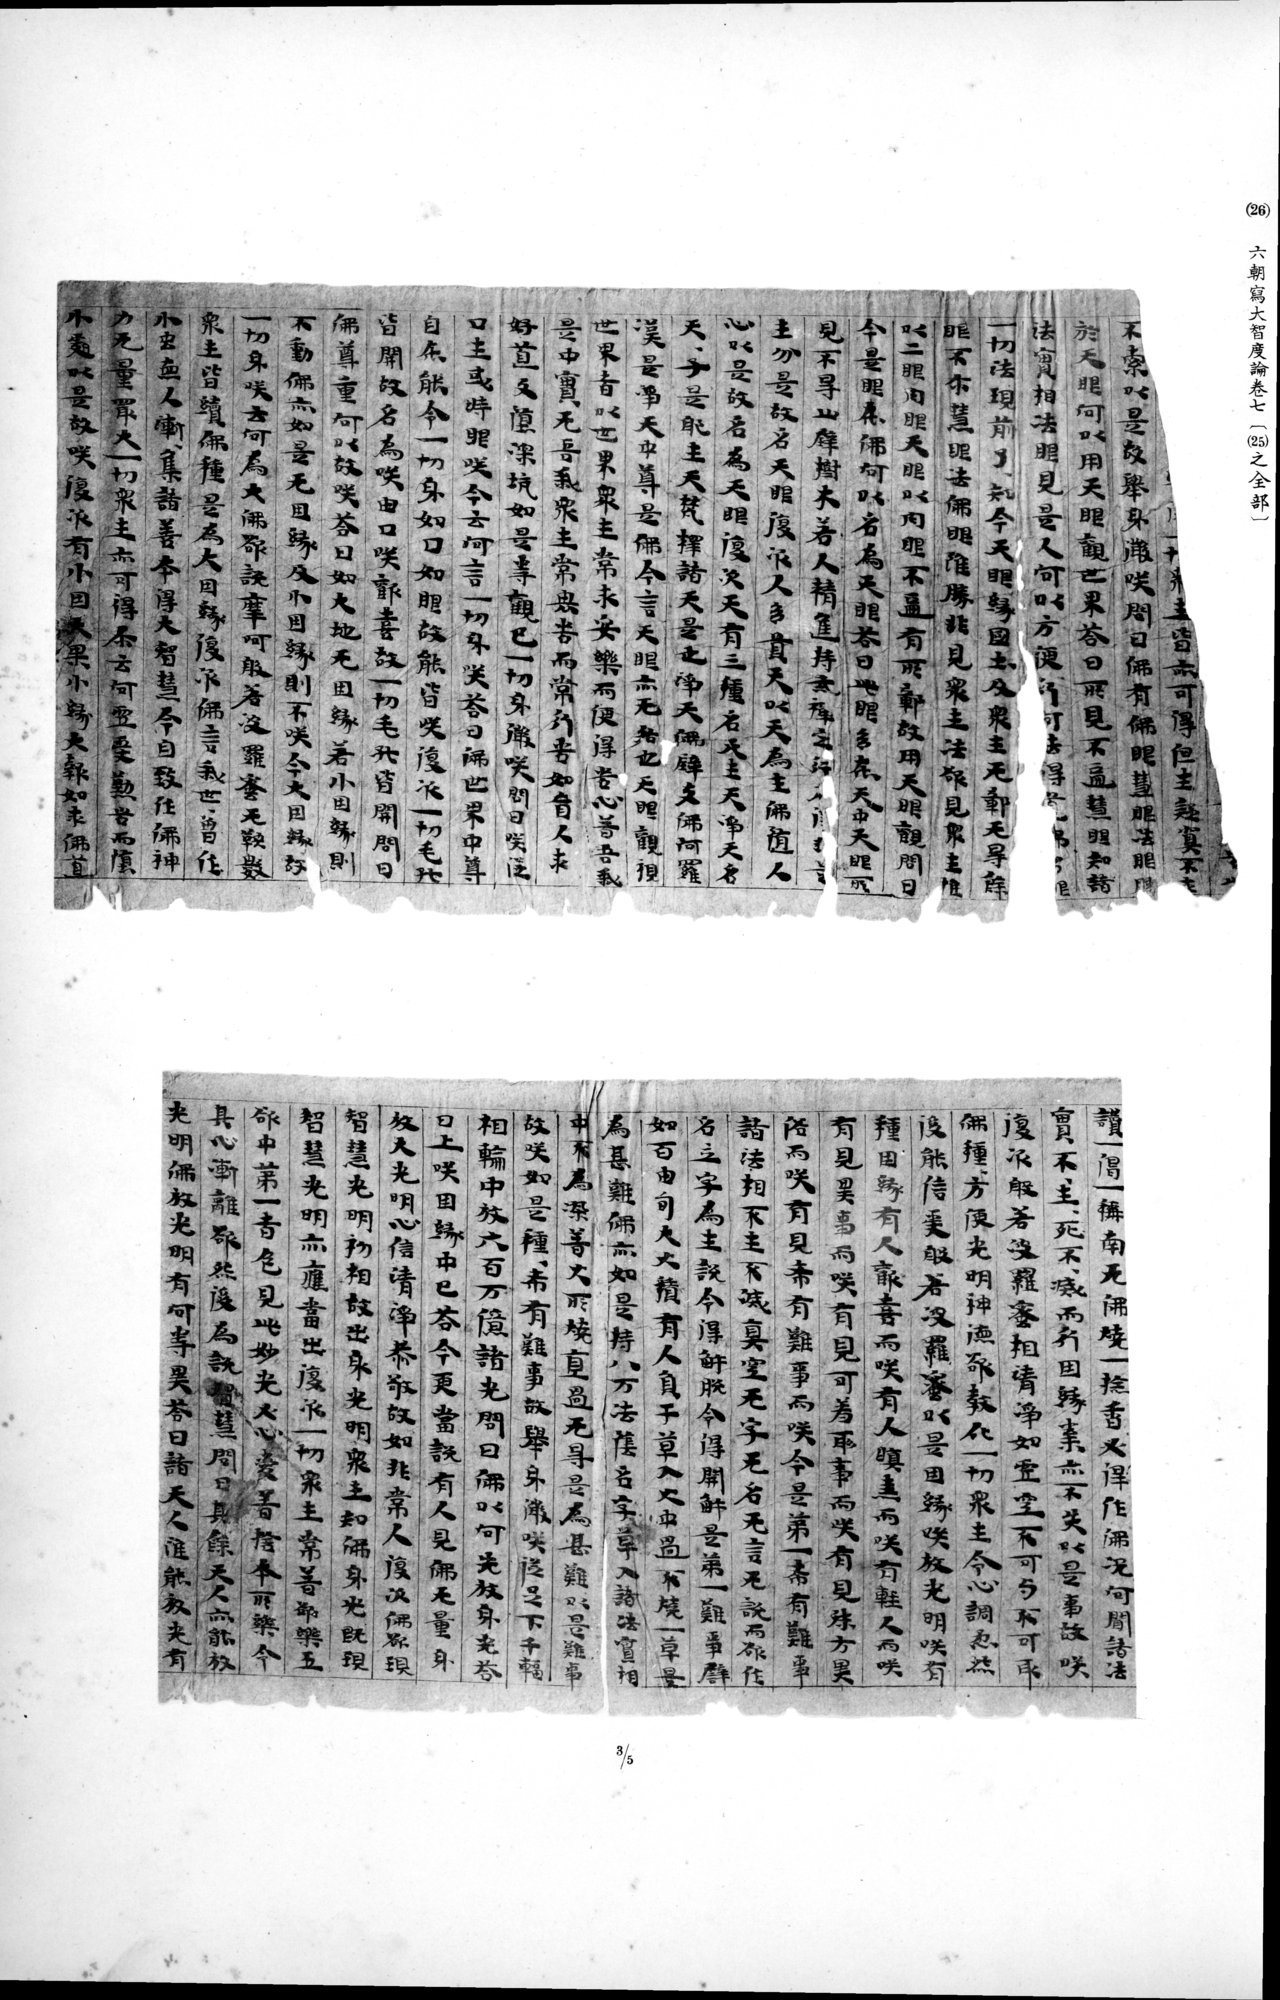 西域考古図譜 : vol.2 / Page 67 (Grayscale High Resolution Image)